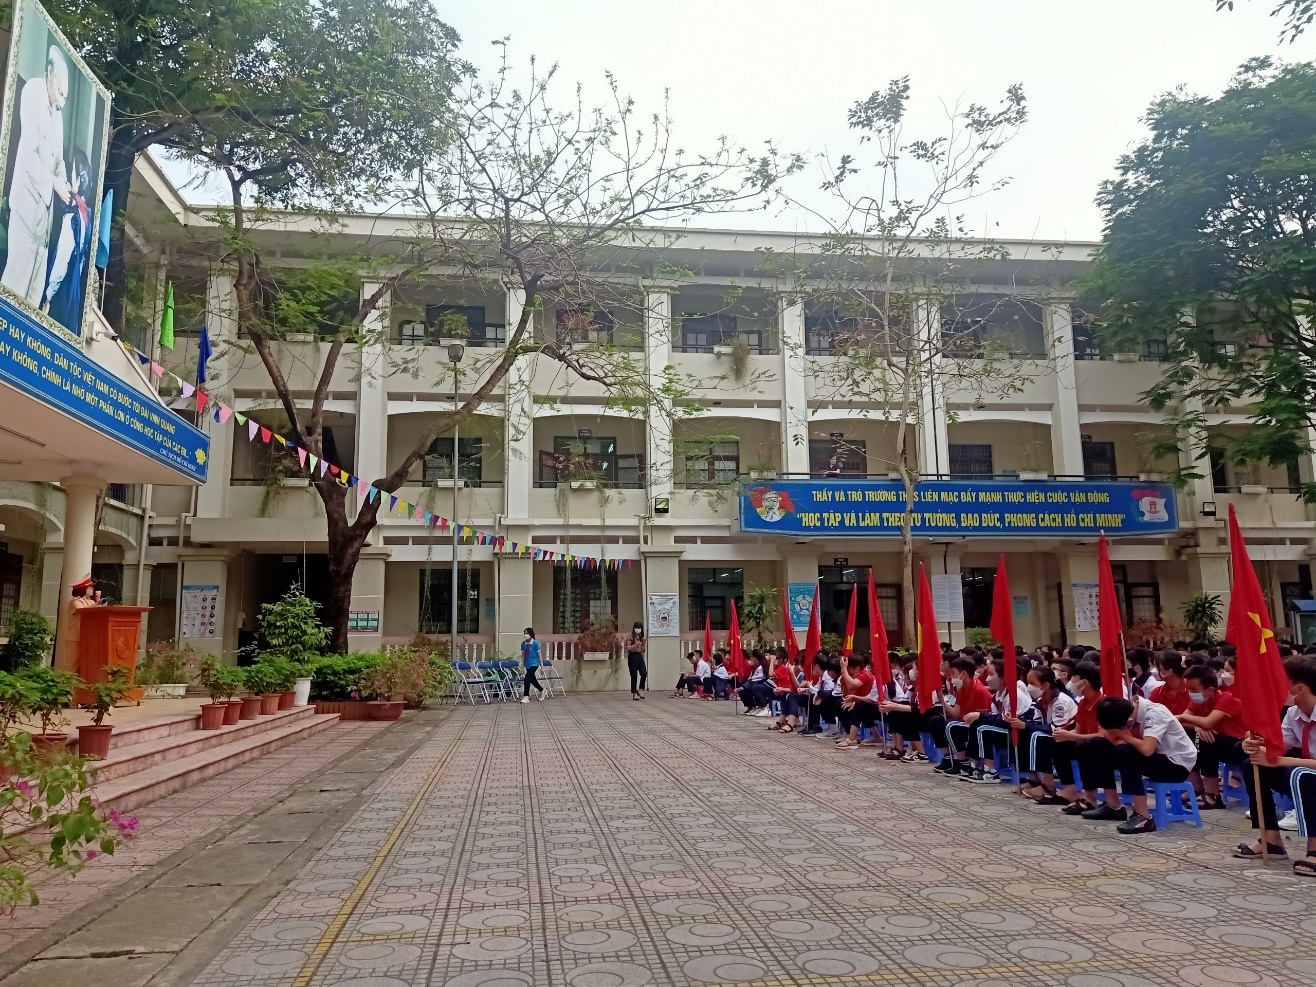 Hà Nội: Công an quận Bắc Từ Liêm đẩy mạnh tuyên truyền Luật An toàn giao thông tại các trường học